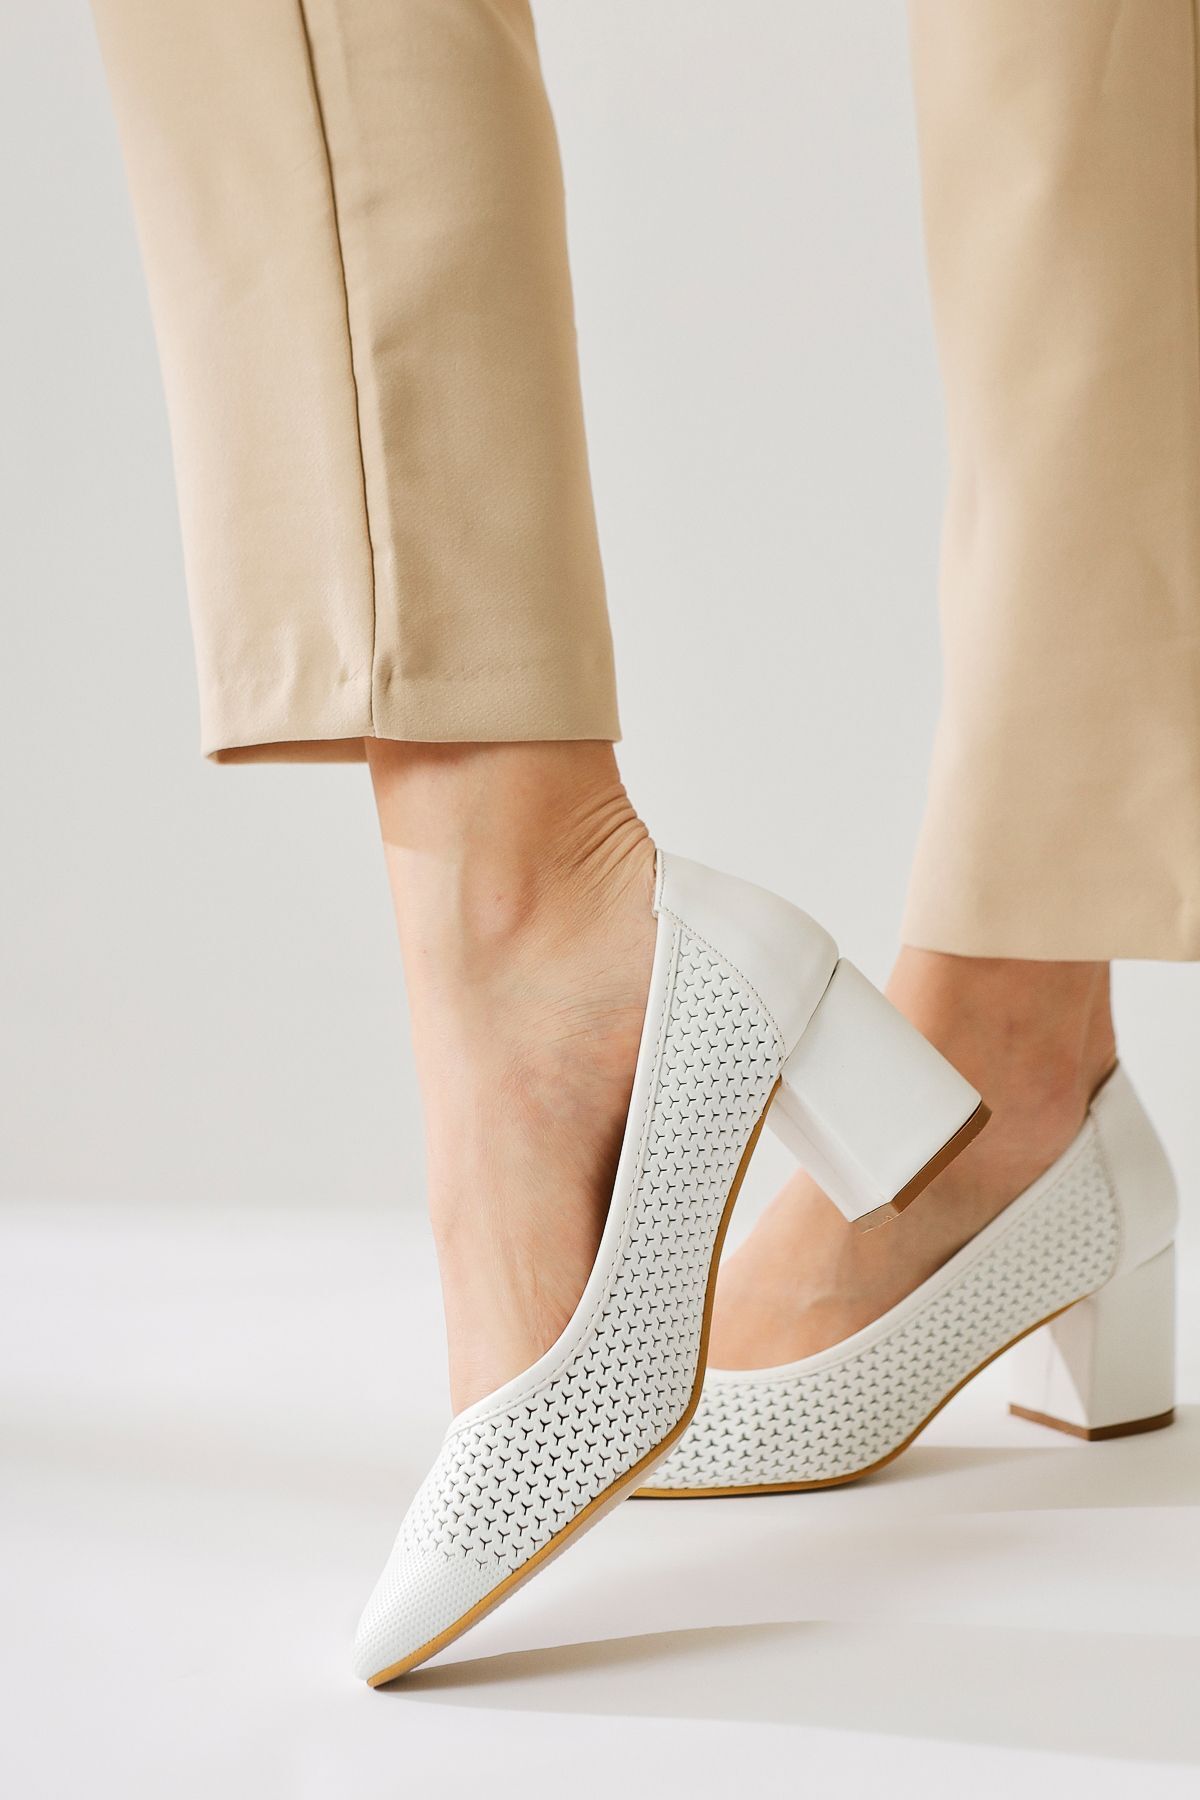 Limoya Nazneen Beyaz Sivri Burunlu Desenli Topuklu Ayakkabı